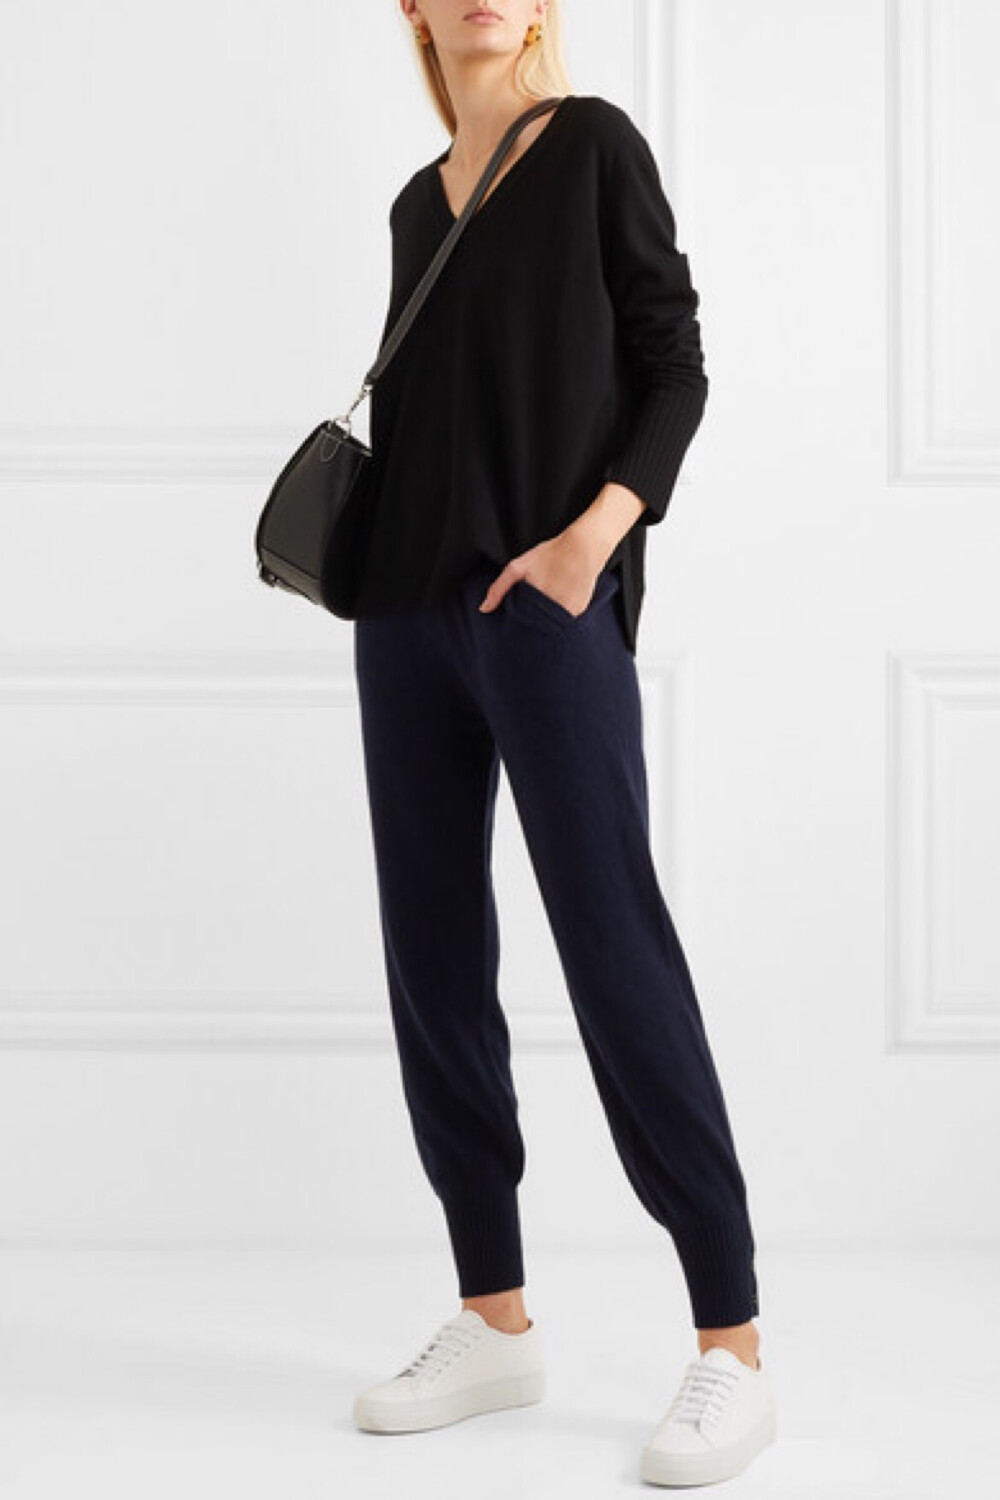 25 年前，Allude 推出了首款 V 领毛衣，时至今日它仍是品牌的畅销单品，创办人 Andrea Karg 相信它定会是你衣橱中的“安全牌”必备品。这一黑色版本以精选上等细腻羊绒纱线织就，质地格外柔软，宽松的廓形可带来舒适穿感。不妨配以牛仔裤或休闲裤。